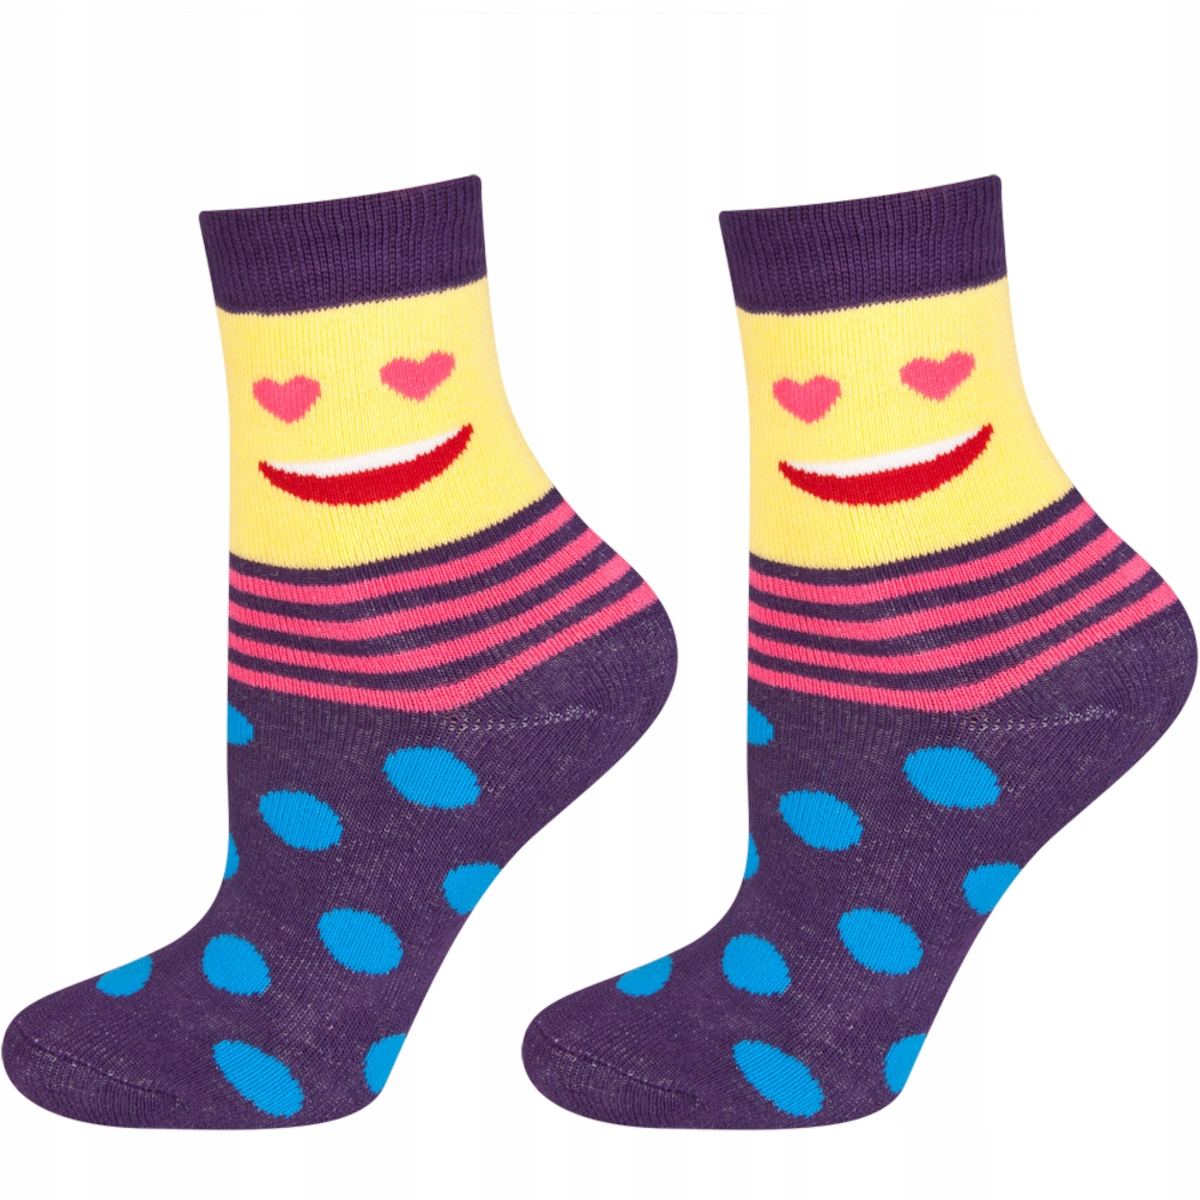 Kinder Socken SOXO mit glücklichen gesichtern warm Frottee - 5,99 € |  Online-Shop SOXO